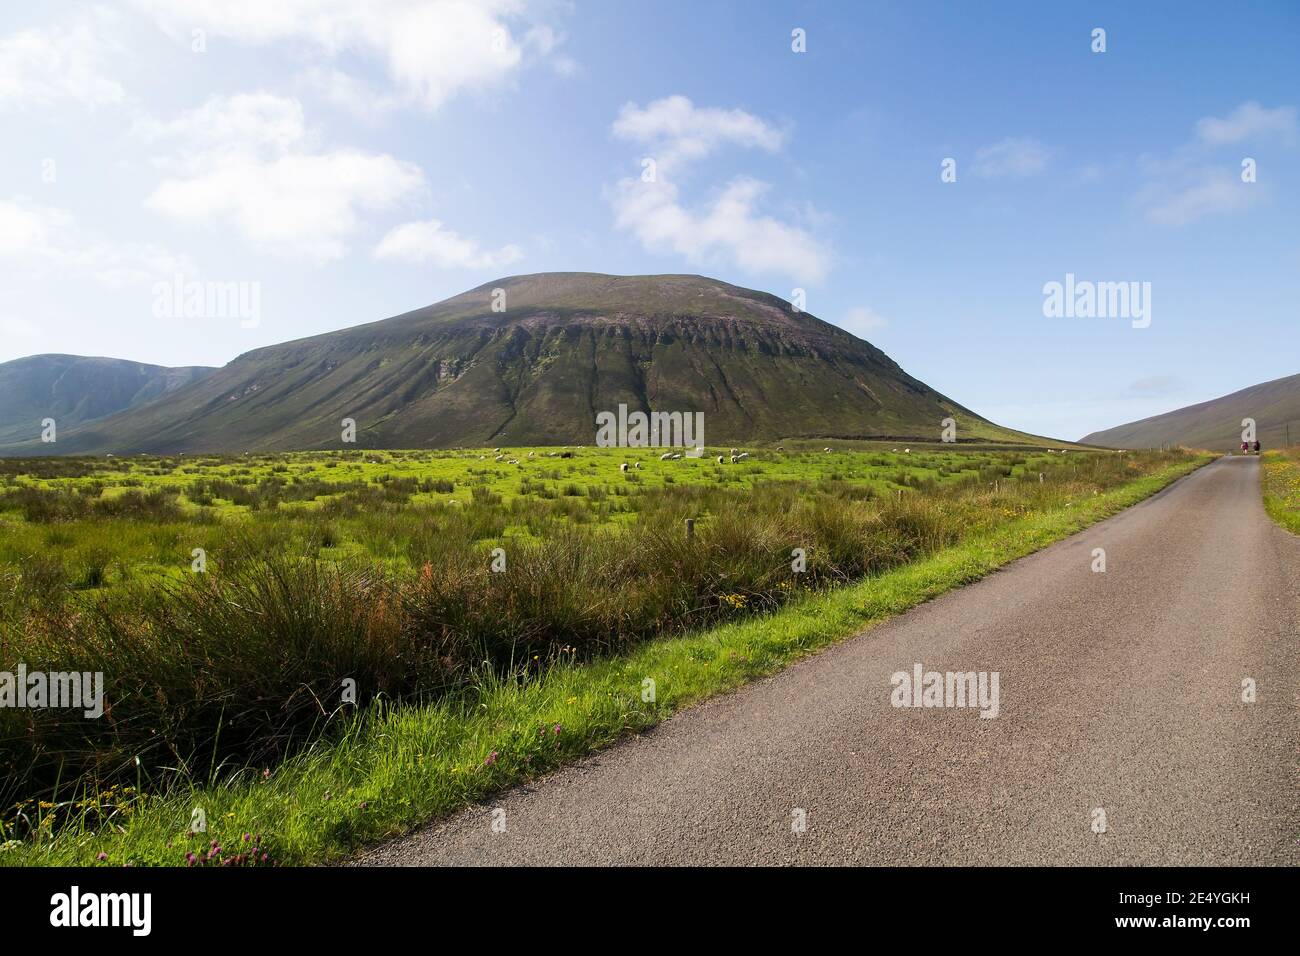 Gran montaña con césped verde y ovejas por el Camino asfaltado cuesta arriba en la isla escocesa de Hoy Foto de stock